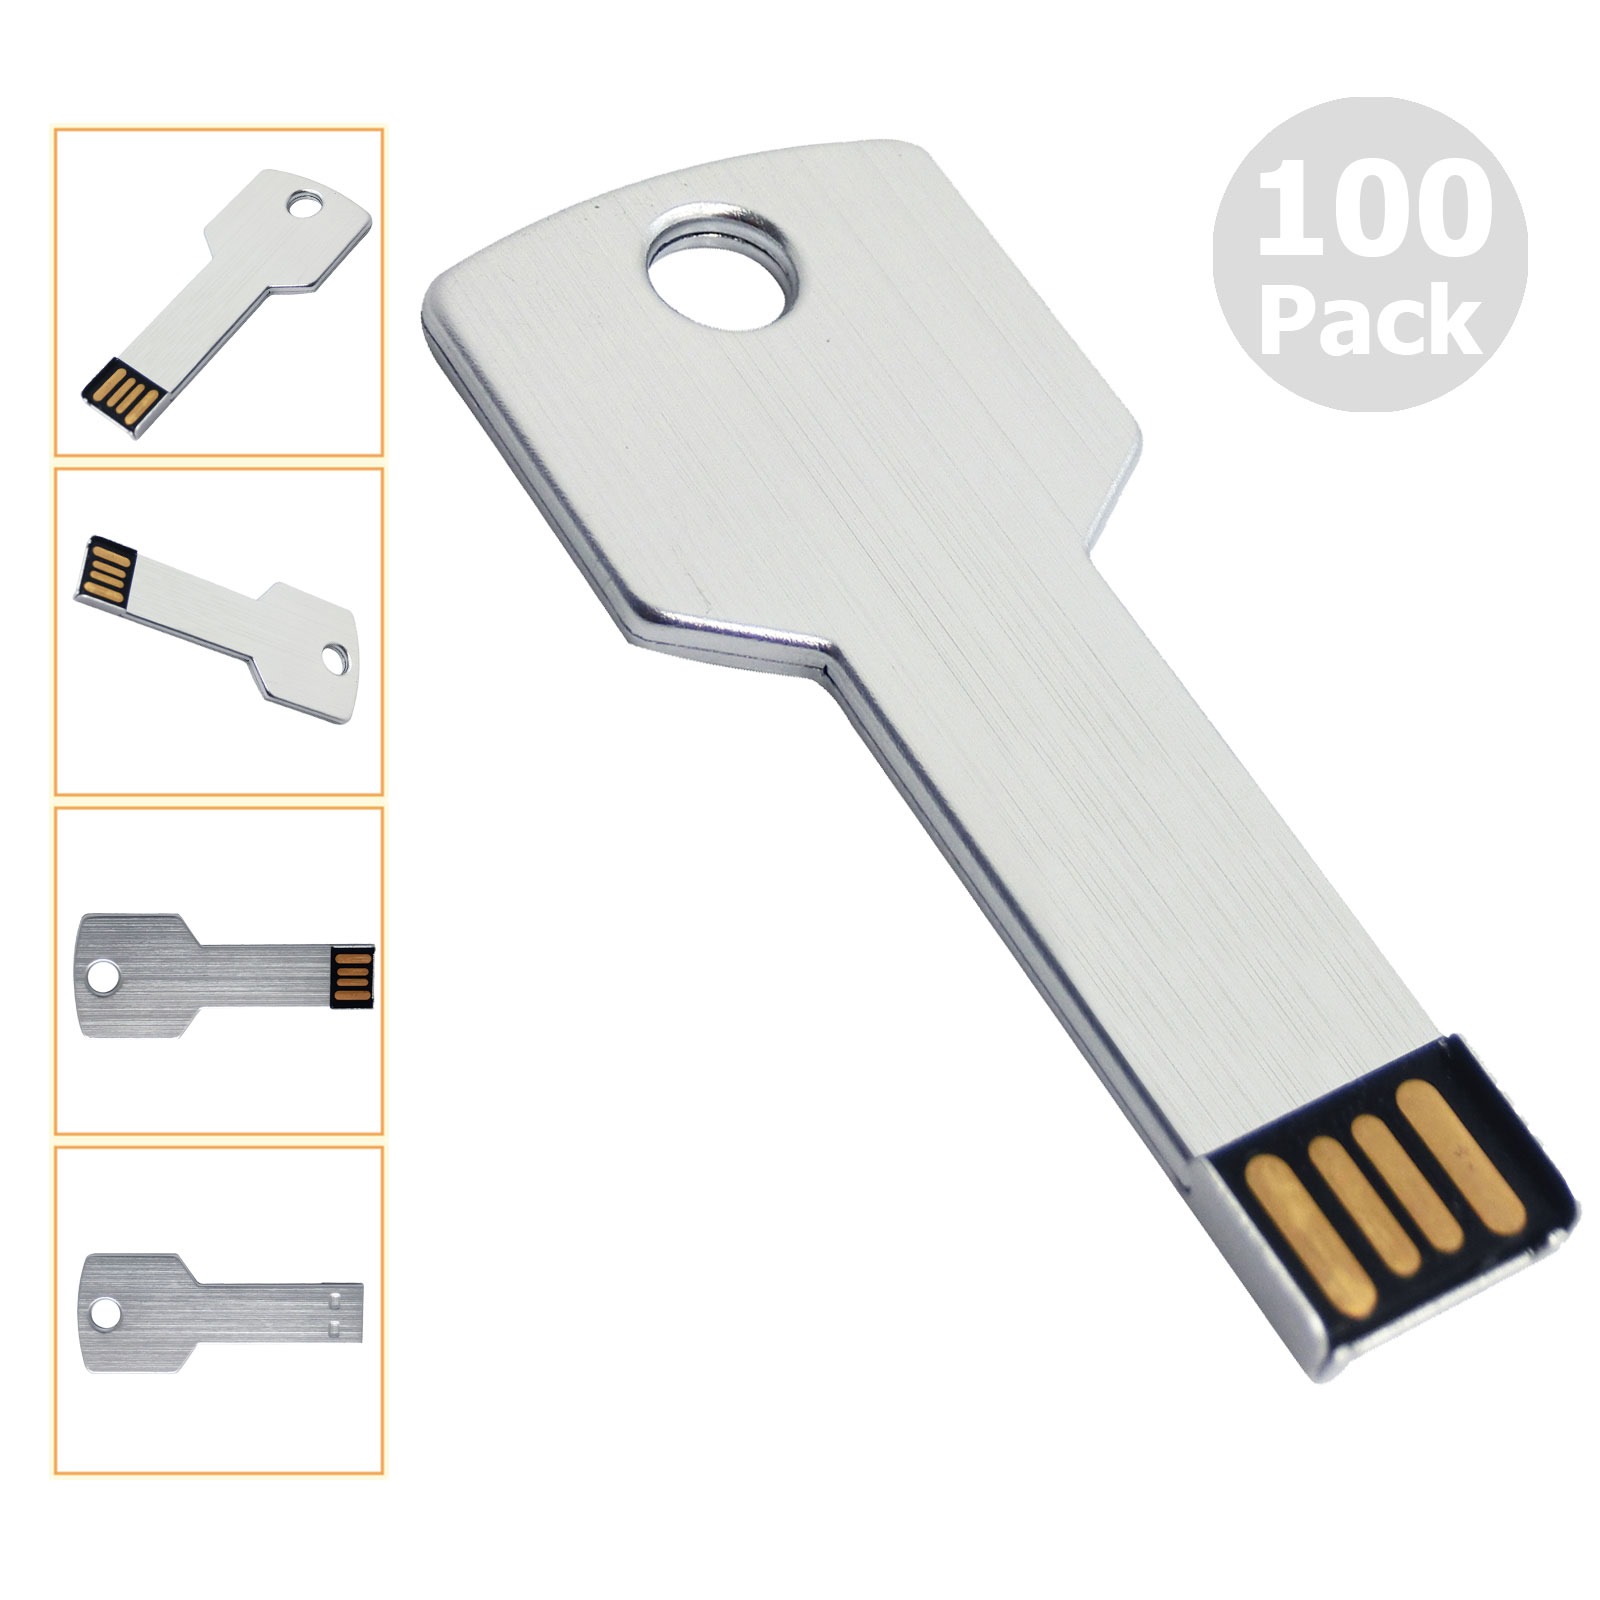 送料無料100pcs 16GB USB 2.0フラッシュドライブフラッシュメモリスティックメタルキーブランクメディアPCラップトップMacBook親指ペンドライブマルチカラー